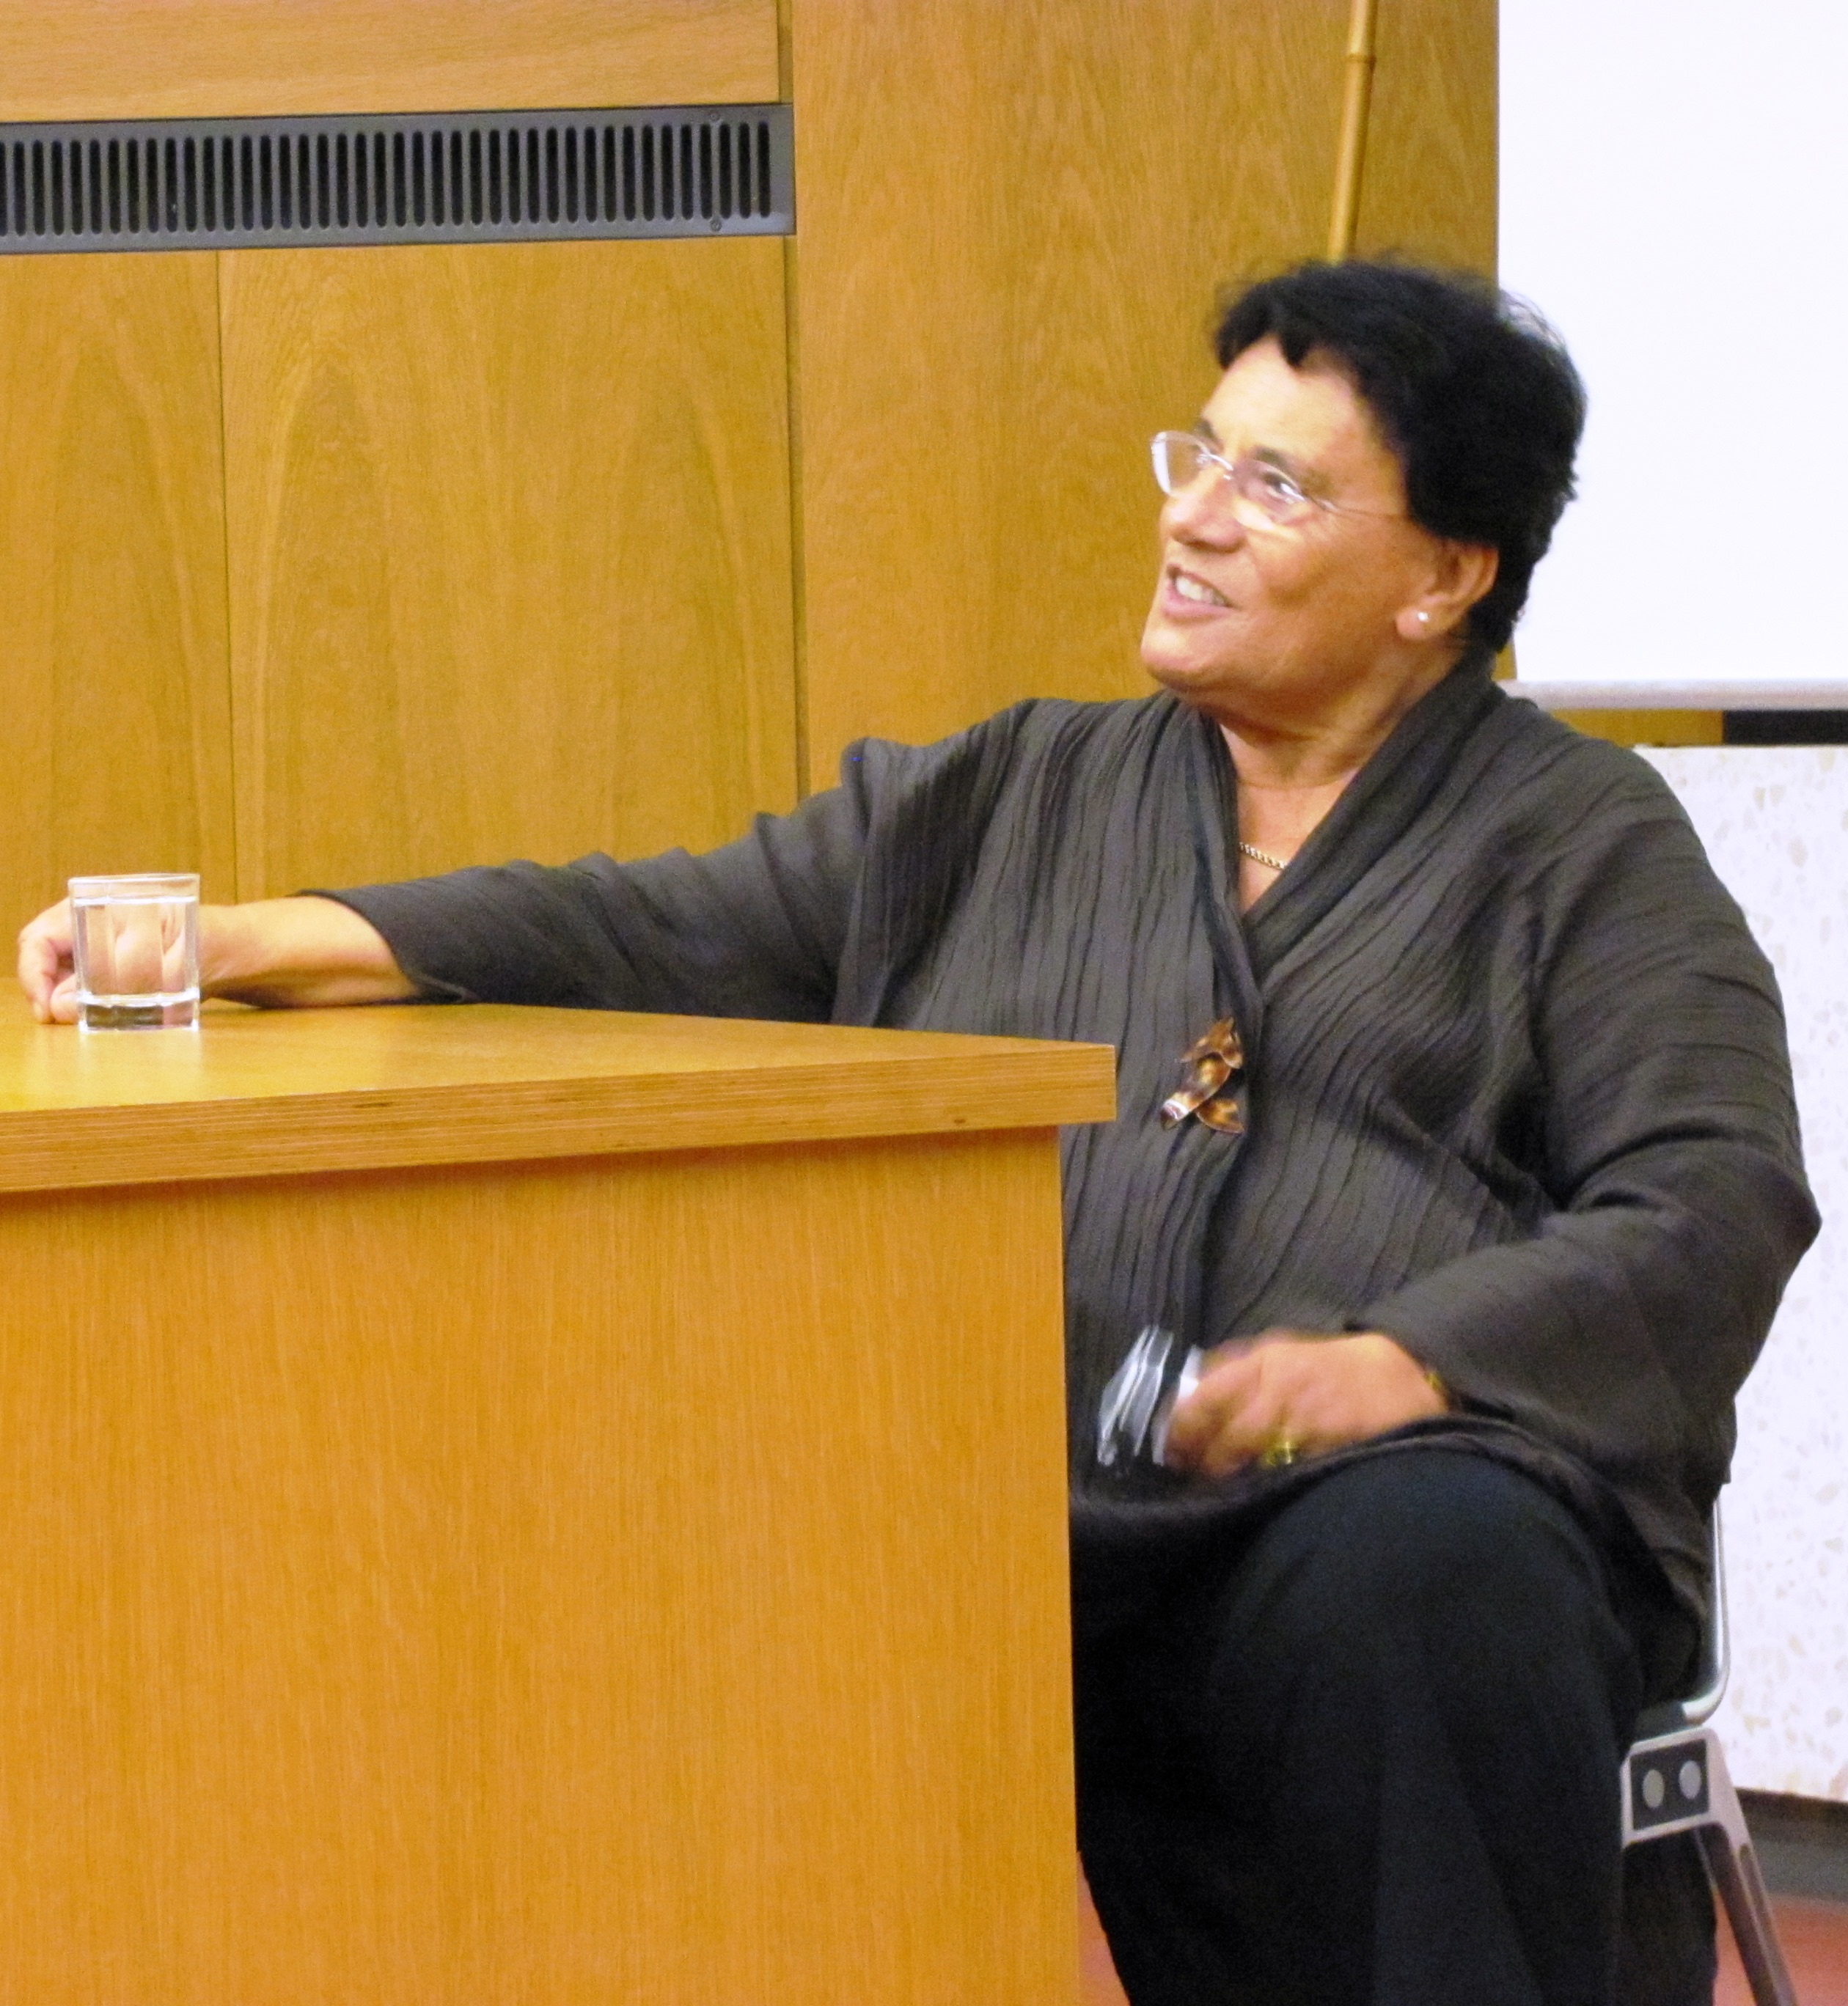 Auf dem Bild sitzt die Namensgeberin Professorin Ina Pichlmayr an einem Tisch im Hörsaal.